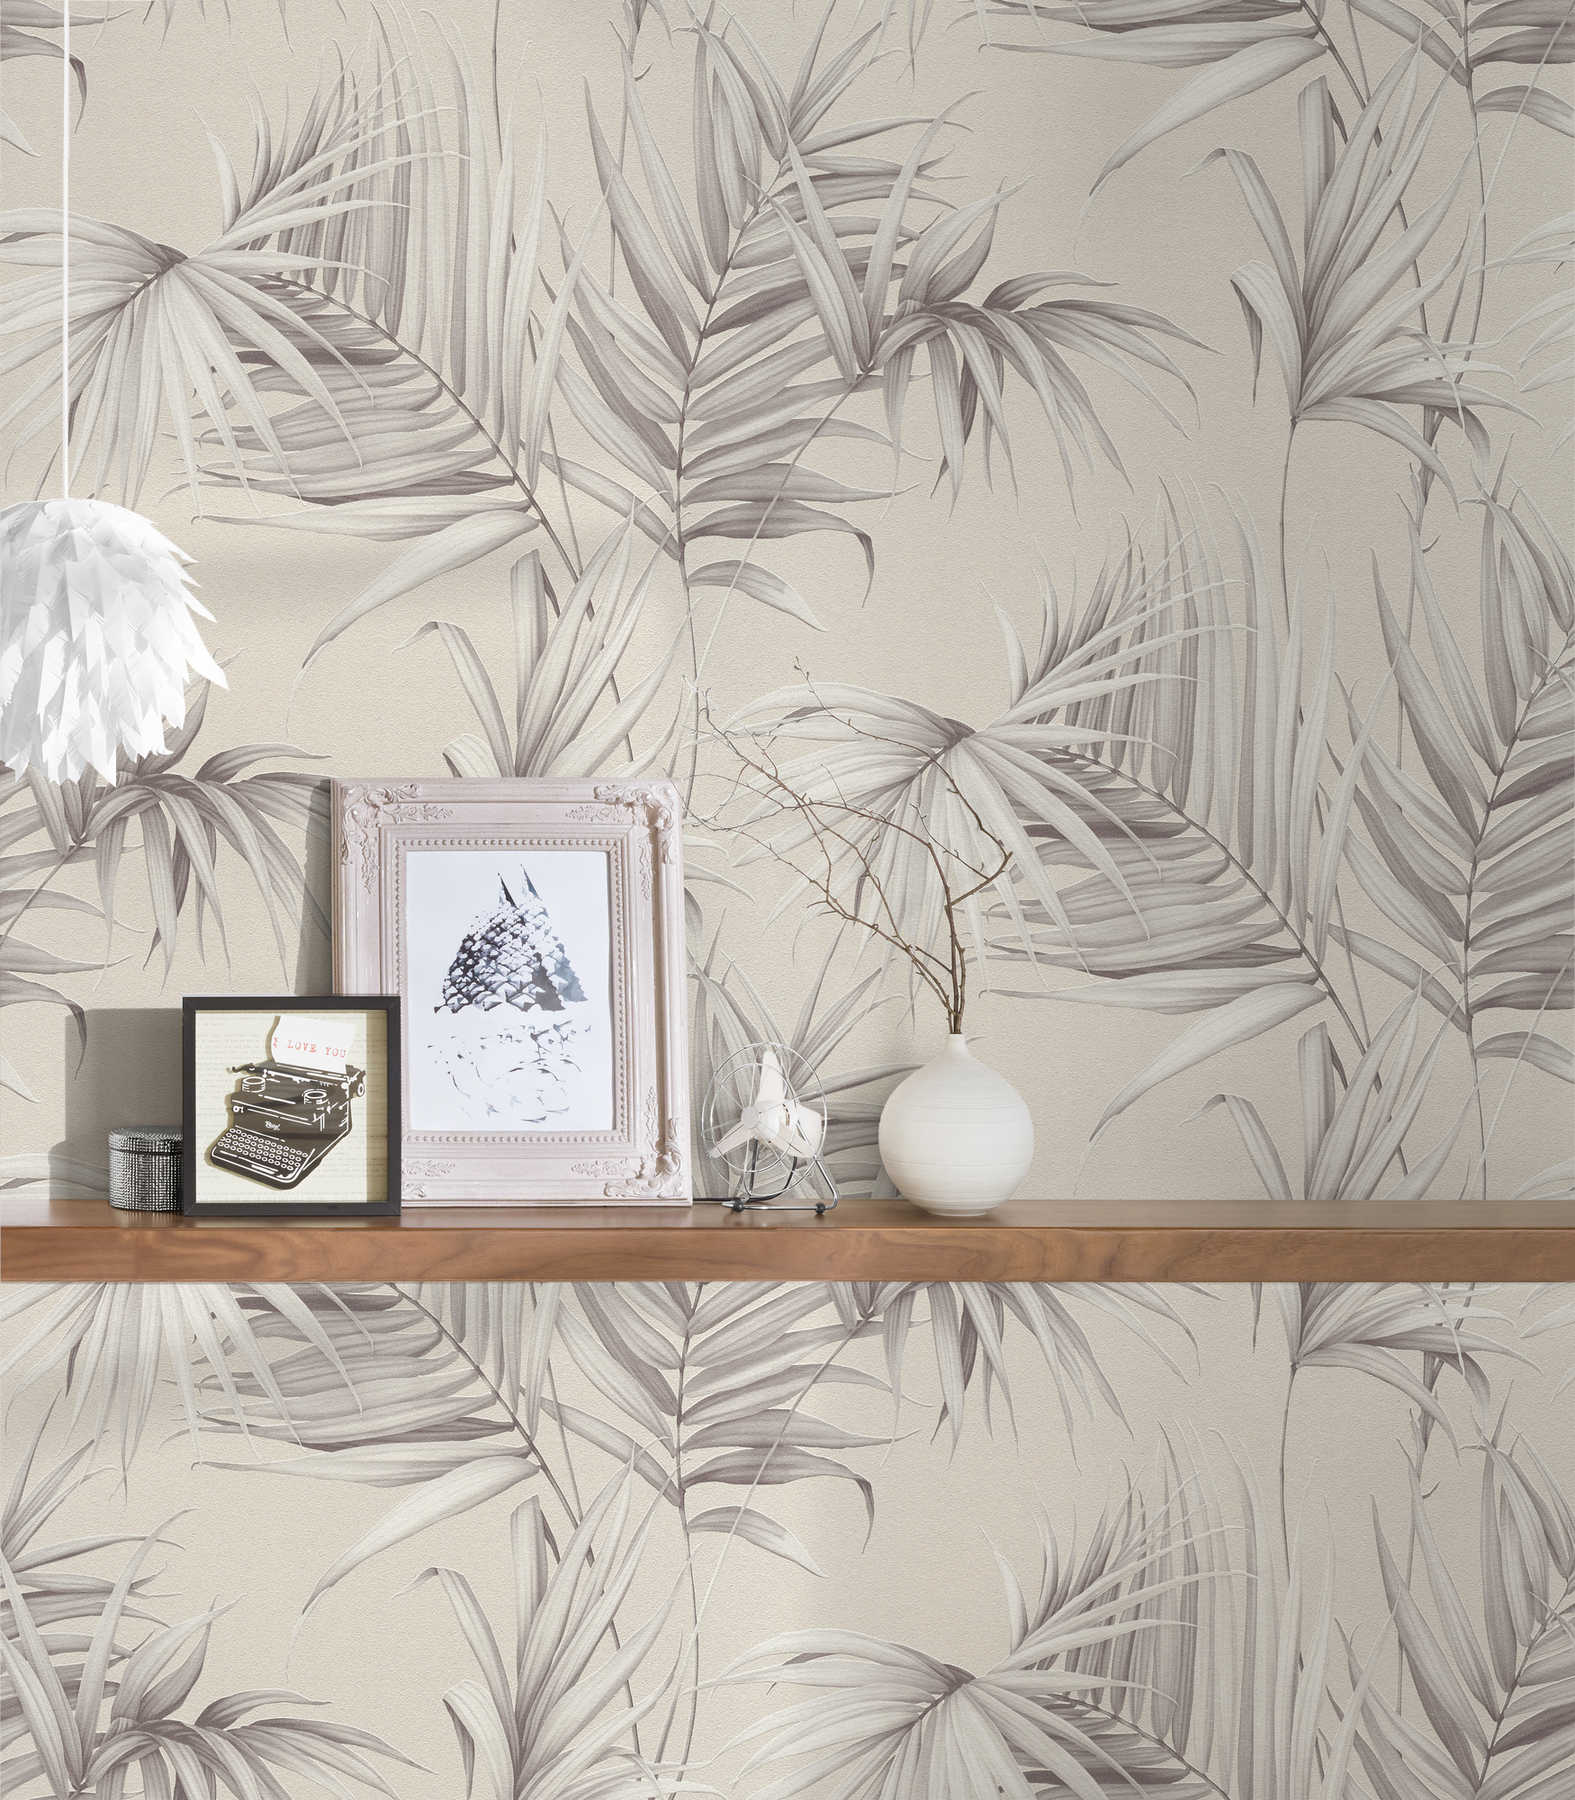             Papel pintado de hojas de palmera con efecto de estructura - beige, gris
        